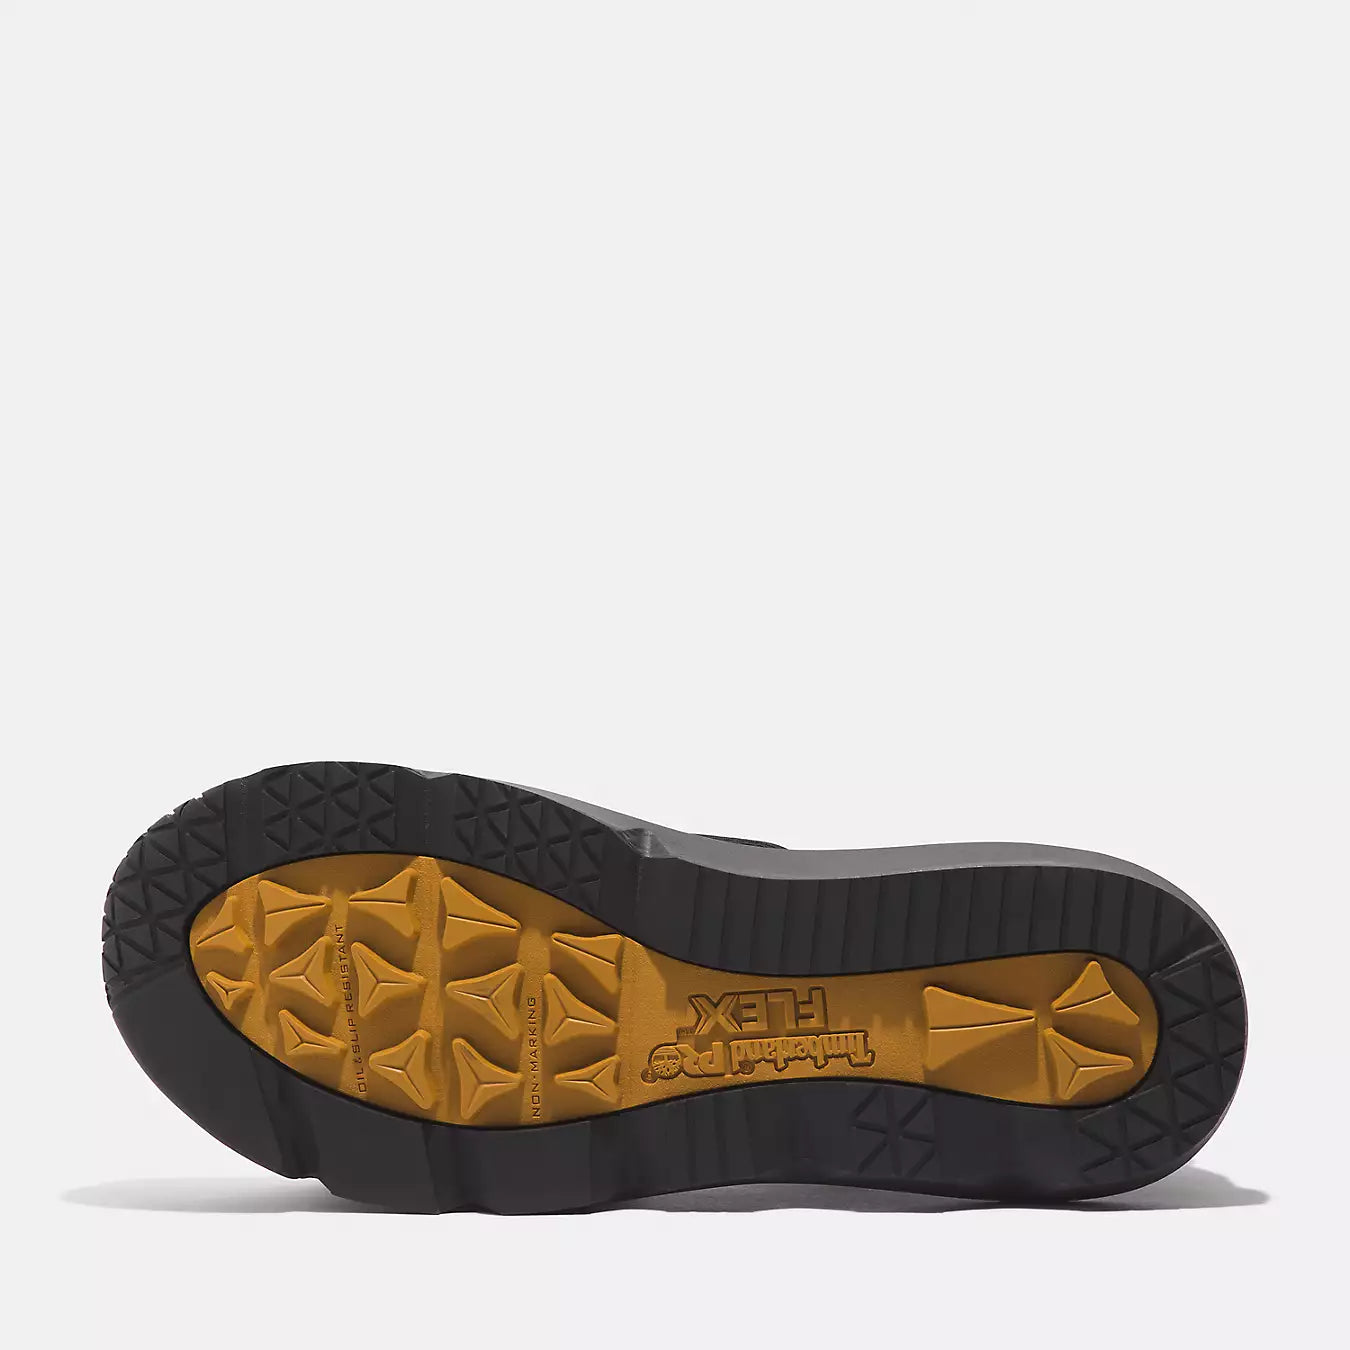 Timberland Morphix Composite Toe Work Sneaker Men's  6